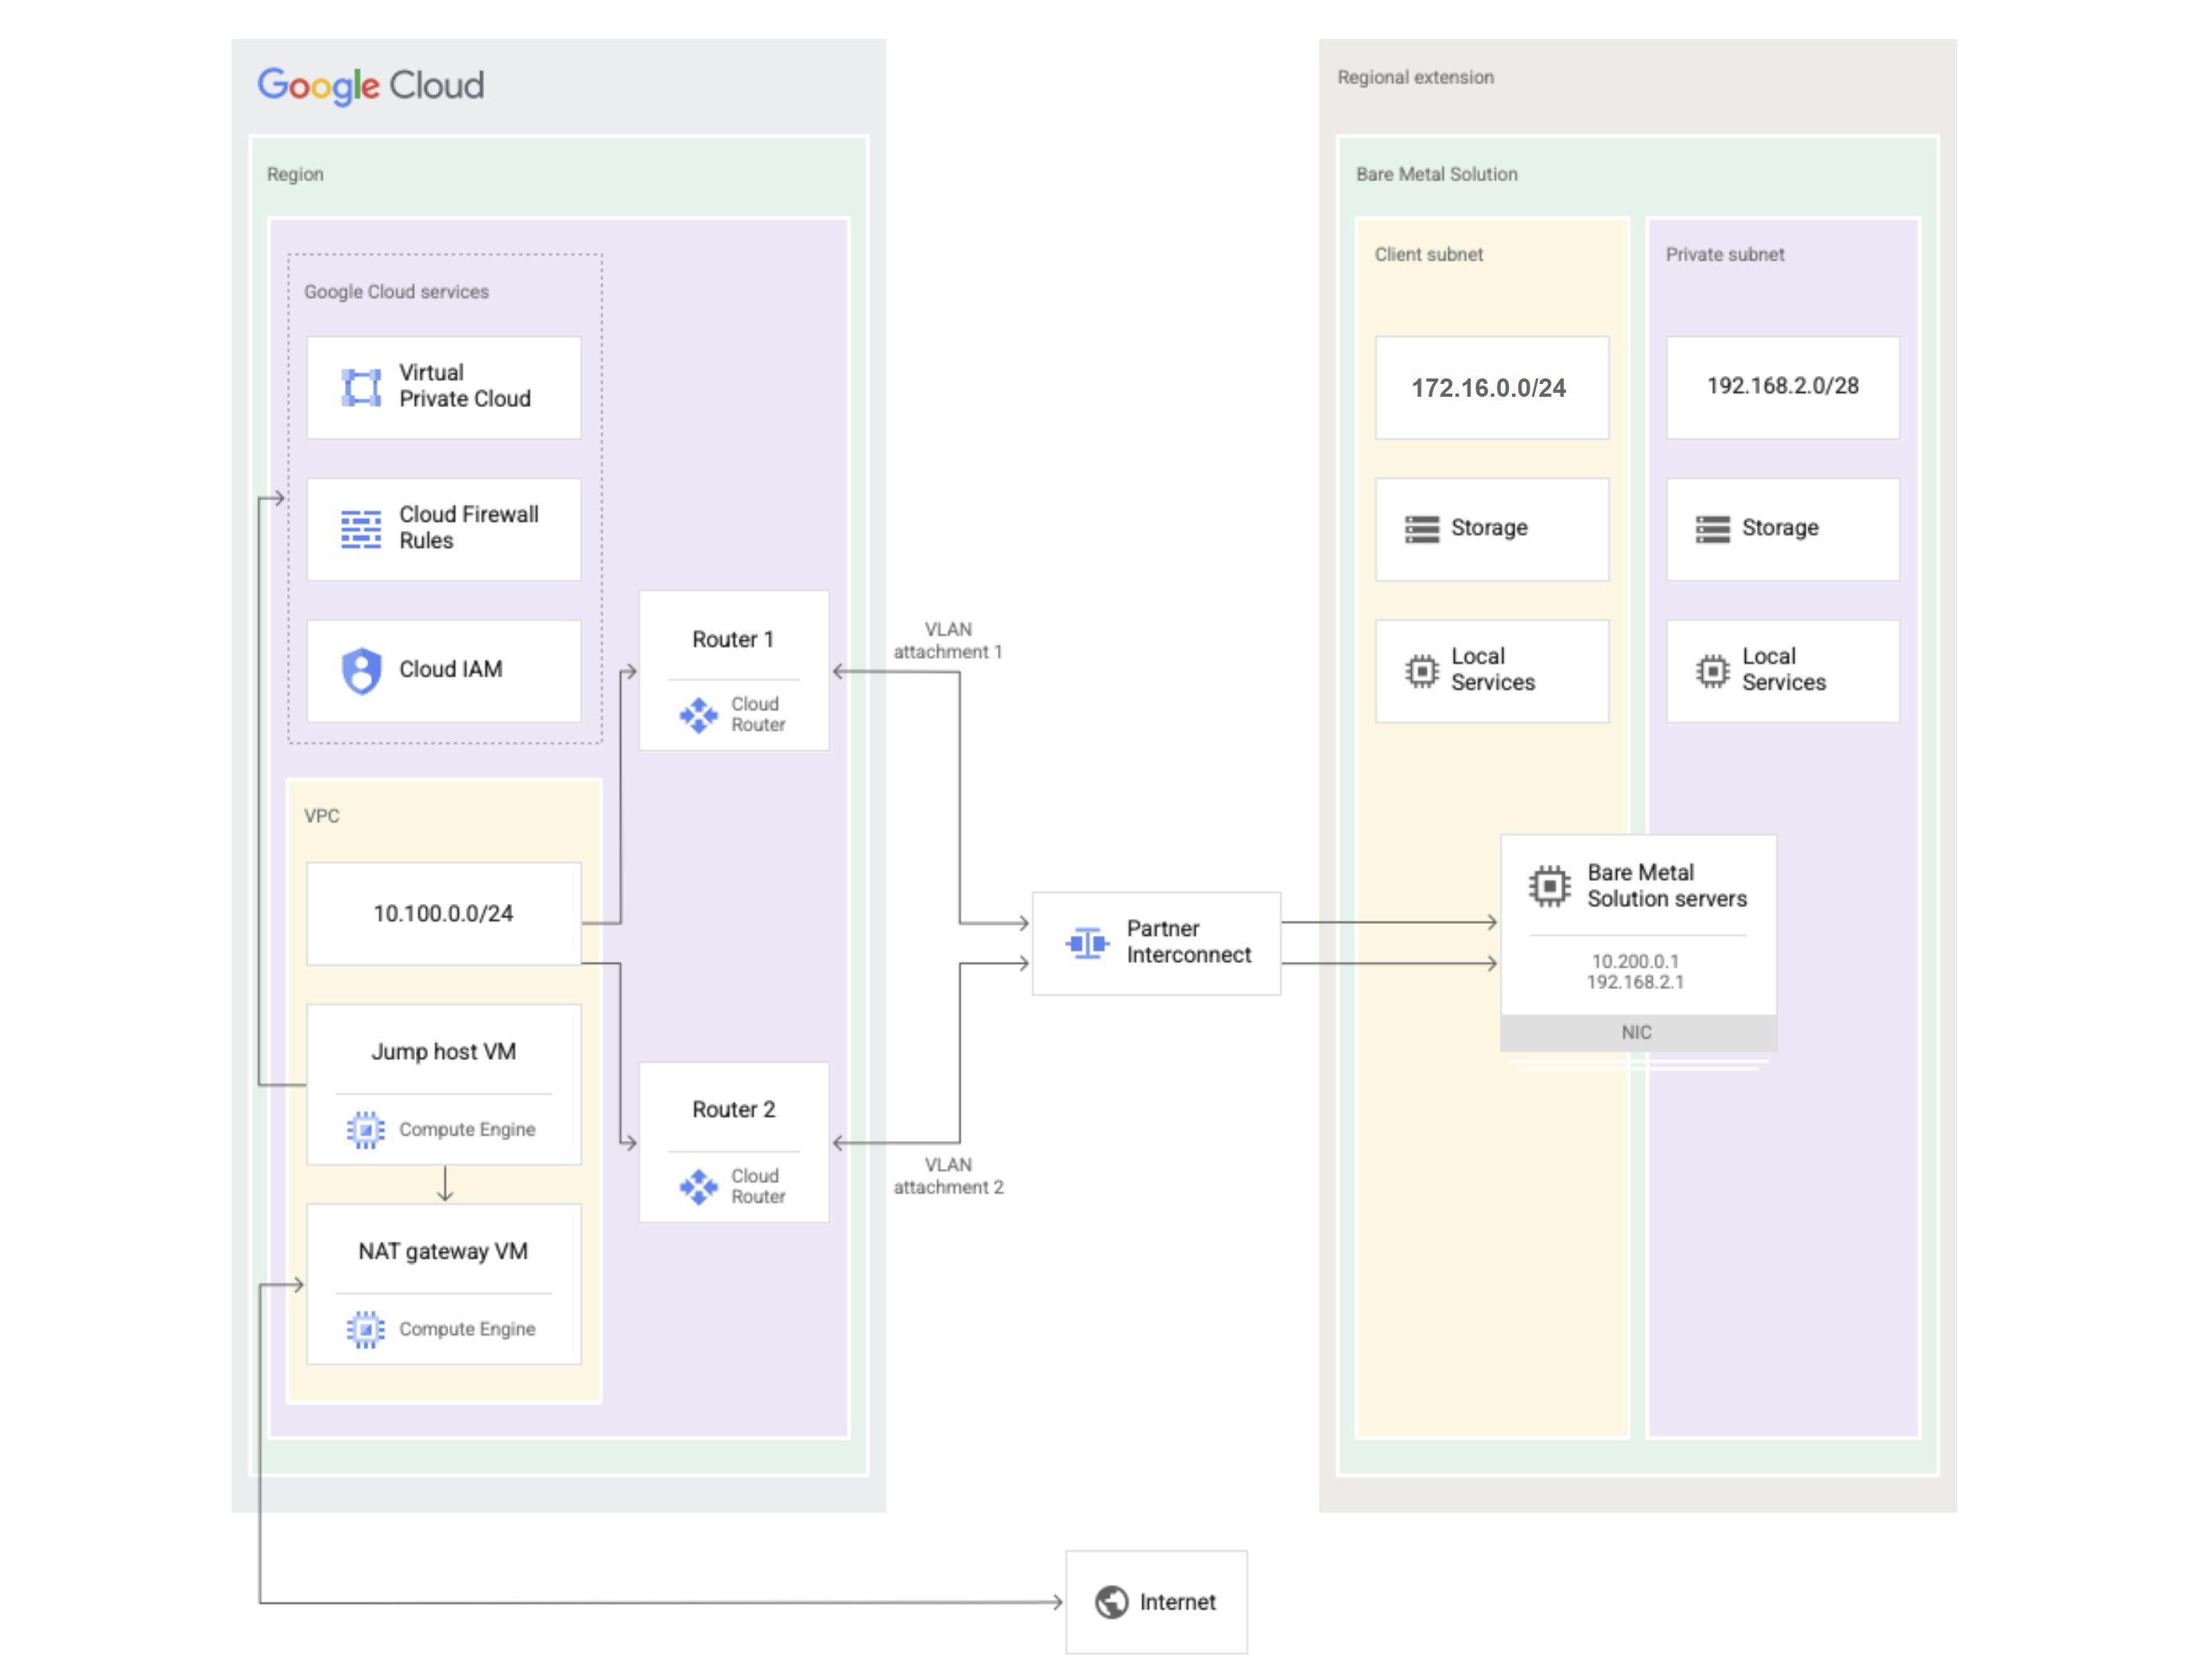 Diagramm zur Bare-Metal-Lösung zeigt, welche Komponenten in Google Cloud und welche in der regionalen Erweiterung der Bare-Metal-Lösung sind.